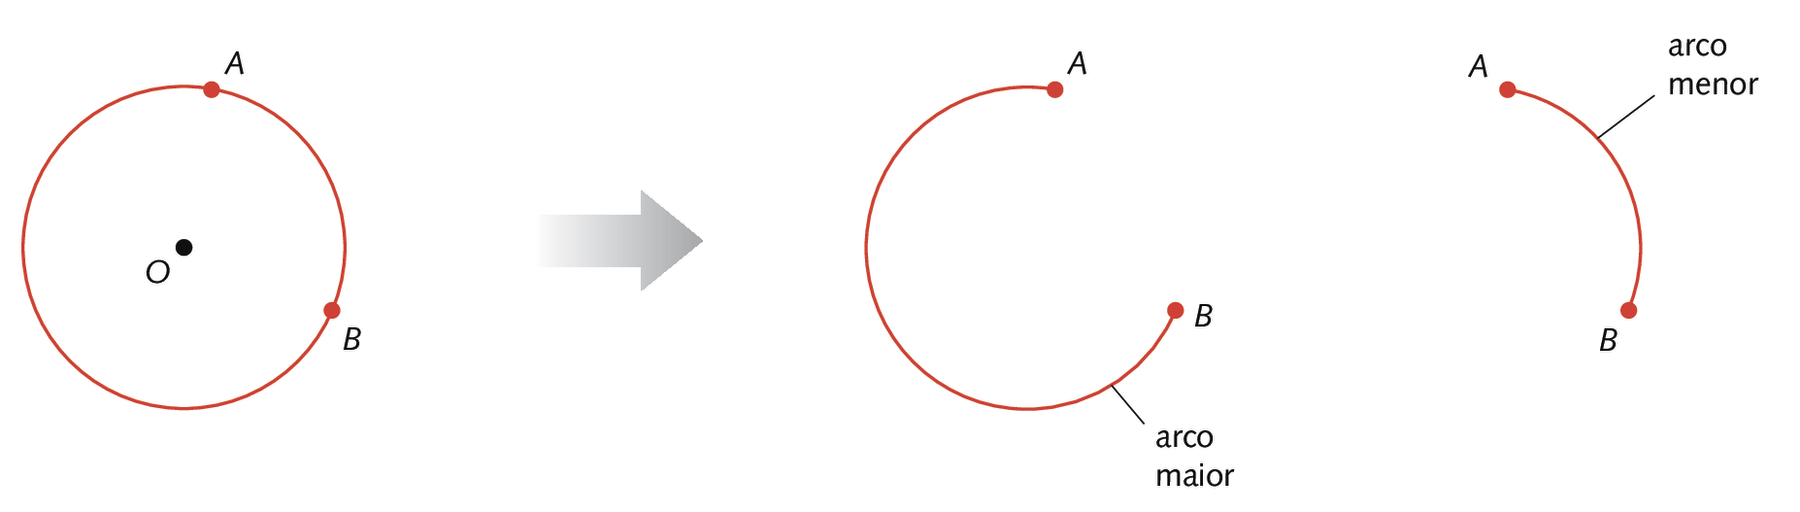 Ilustração. Circunferência com centro O, e pontos A e B pertencentes a ela. Uma seta para a direita mostra duas partes dessa circunferência, limitadas pelos pontos A e B. A primeira parte, figura denominada arco maior, é a maior parte da circunferência, limitada pelos pontos A e B. A outra parte, figura denominada arco menor, é a menor parte da circunferência, limitada pelos pontos A e B.